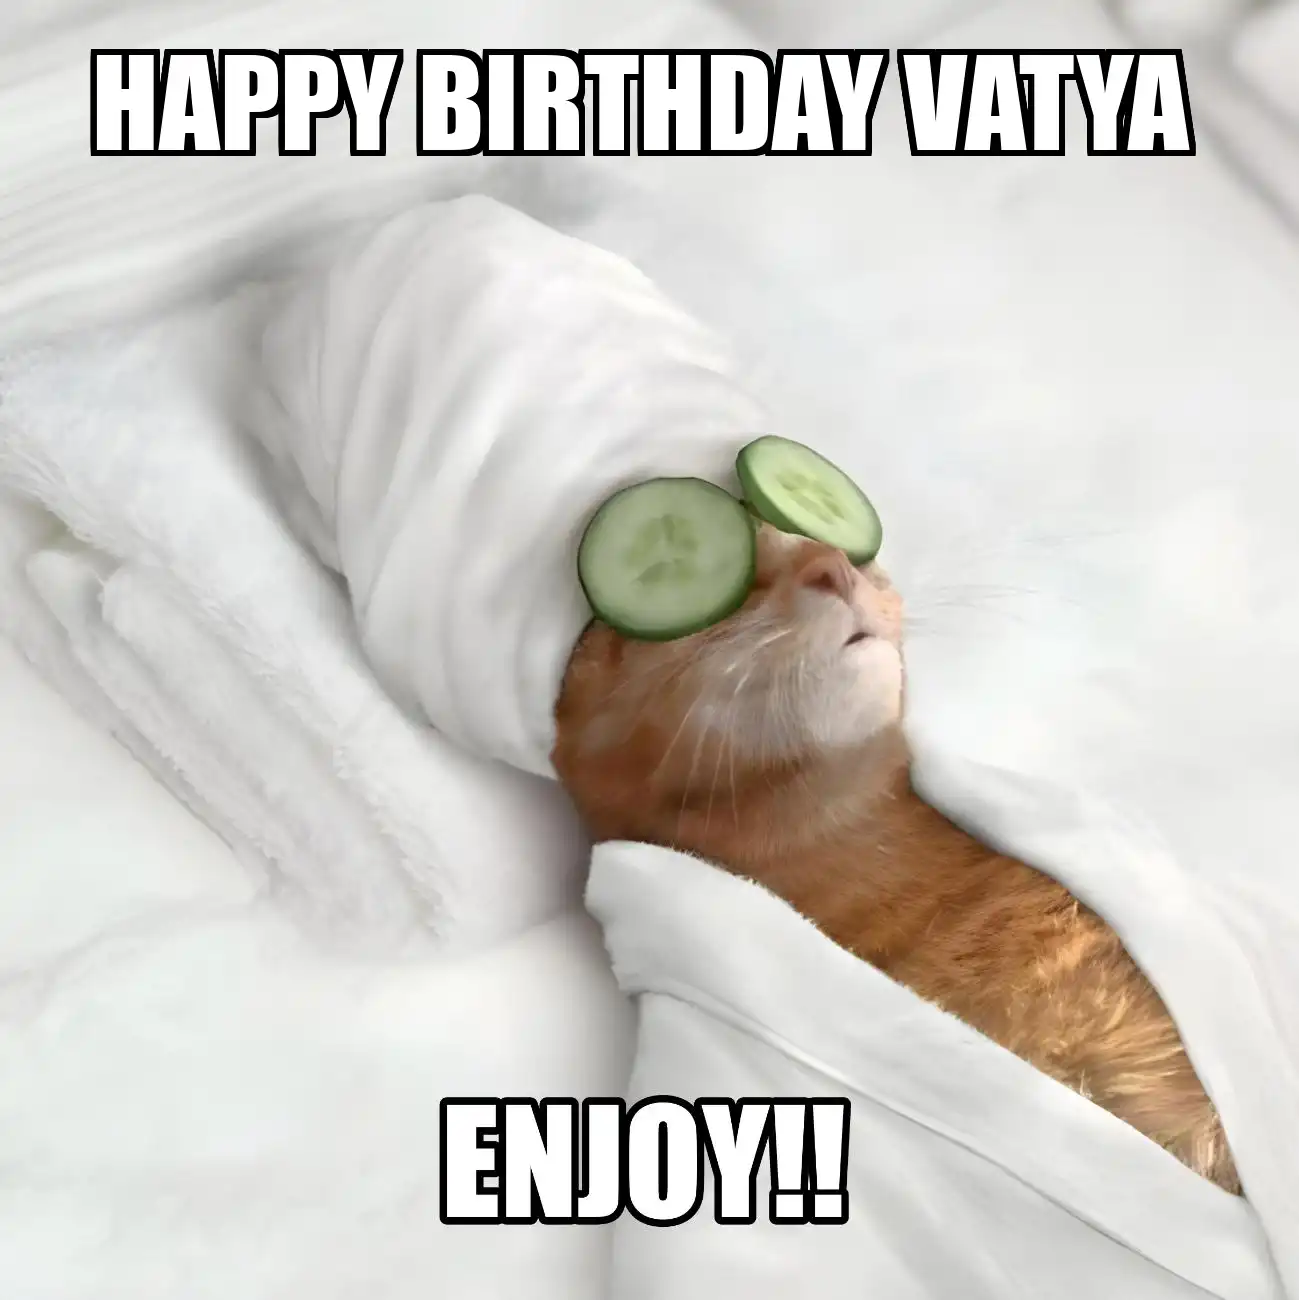 Happy Birthday Vatya Enjoy Cat Meme